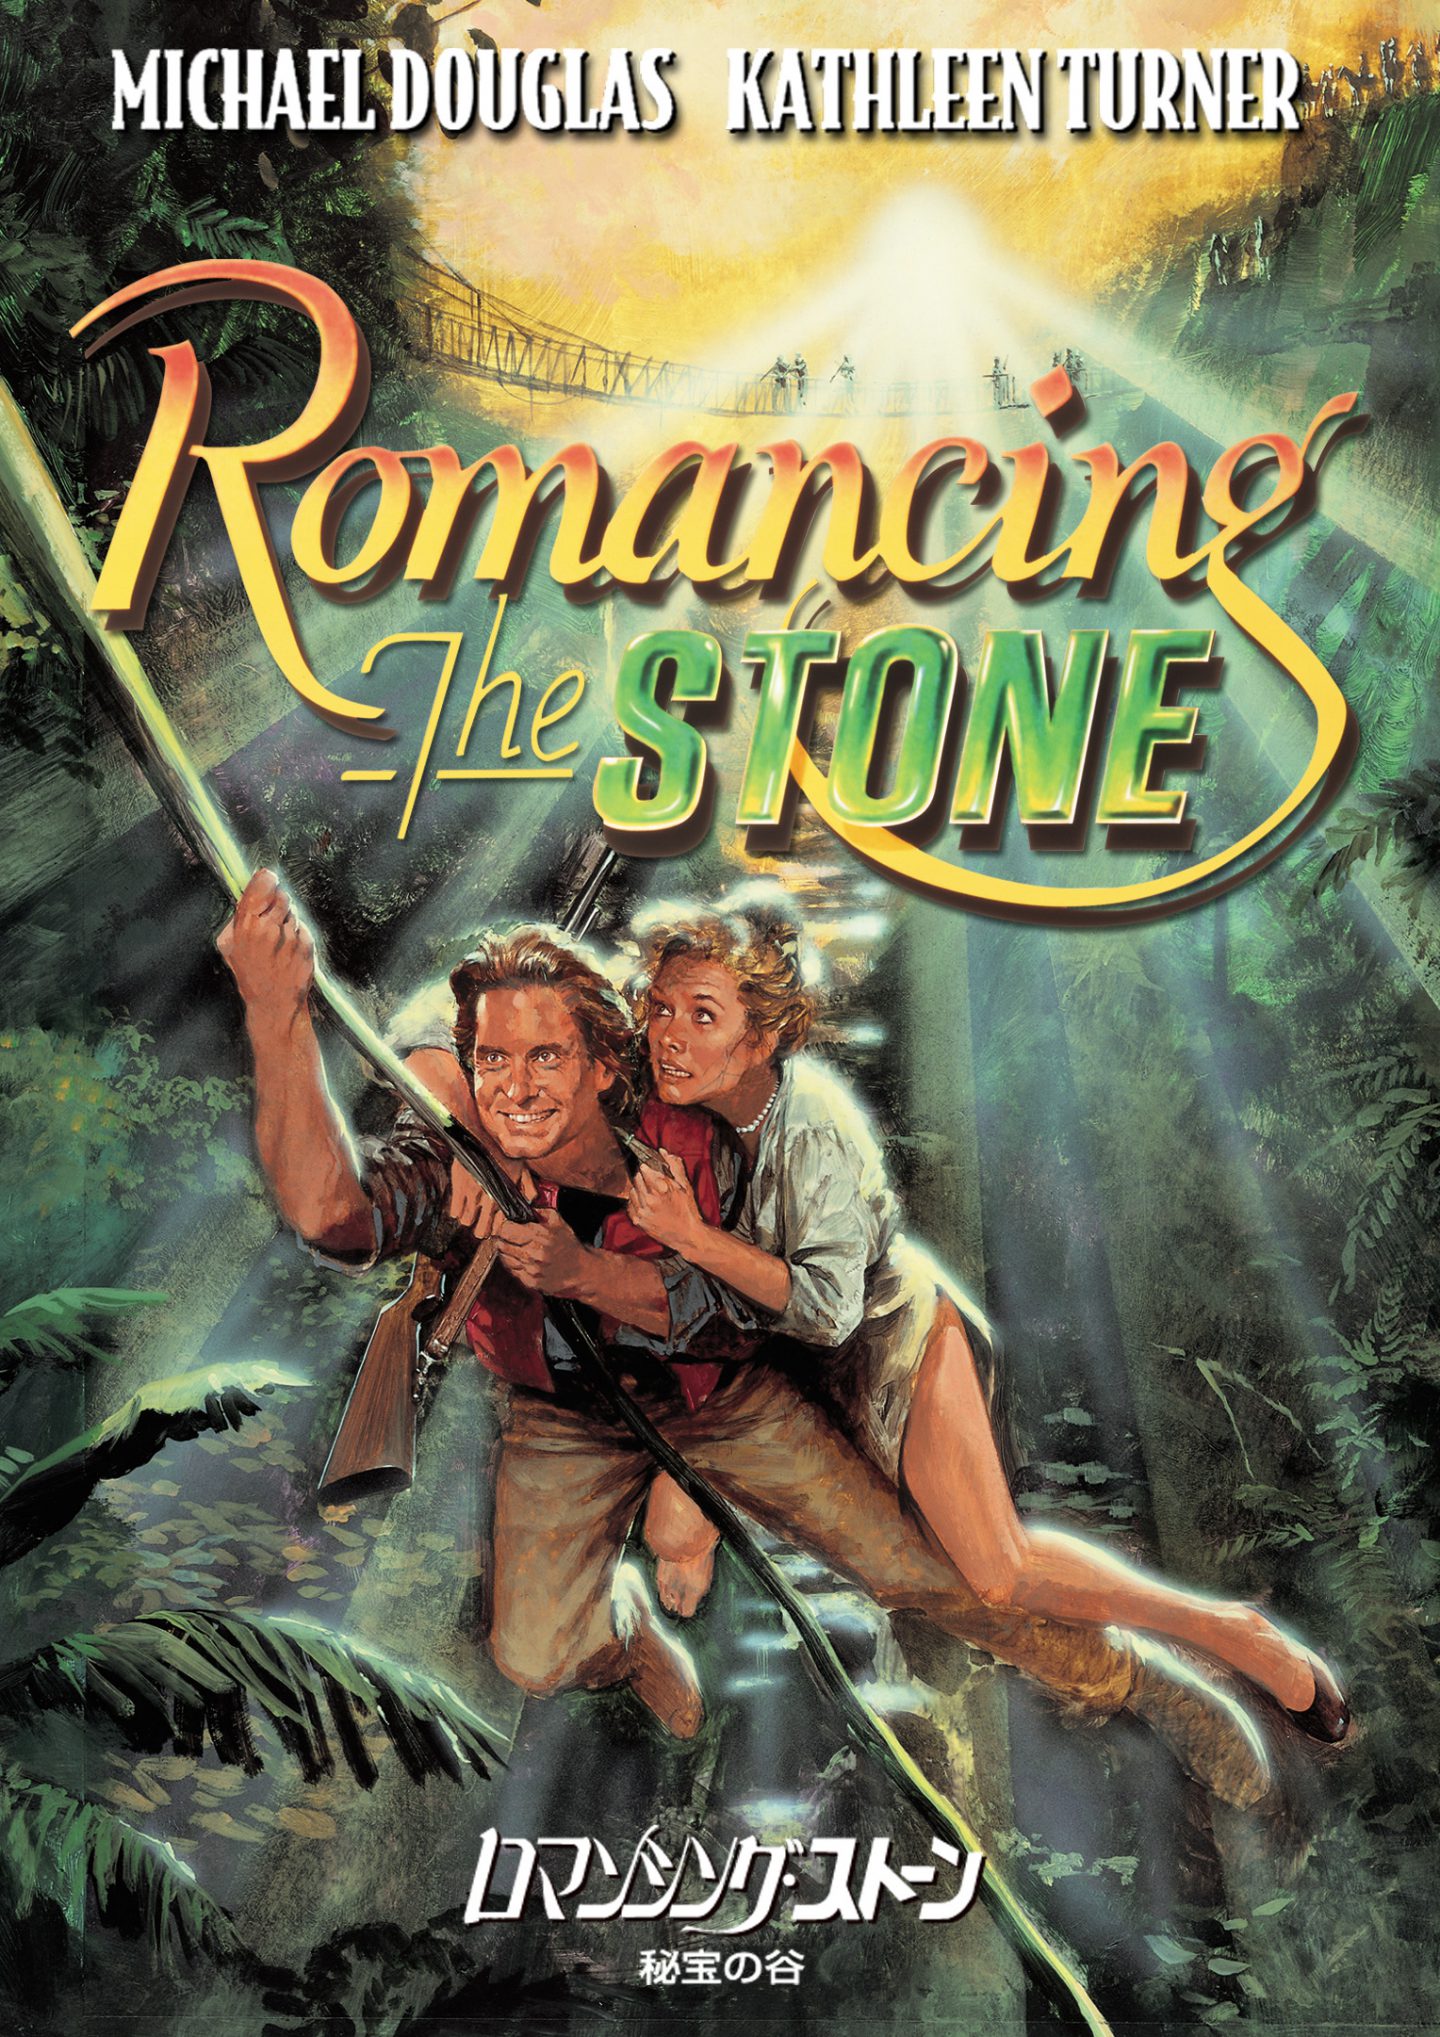 80年代サウンドに胸キュン マイケル ダグラス出世作 ロマンシング ストーン 秘宝の谷 ナイルの宝石 映画 Banger